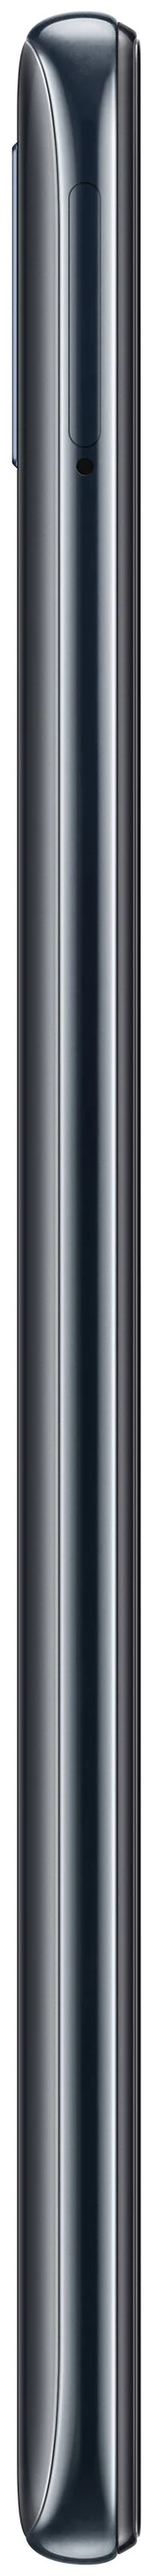 Samsung Galaxy A30 32GB - аккумулятор: 4000 мА·ч